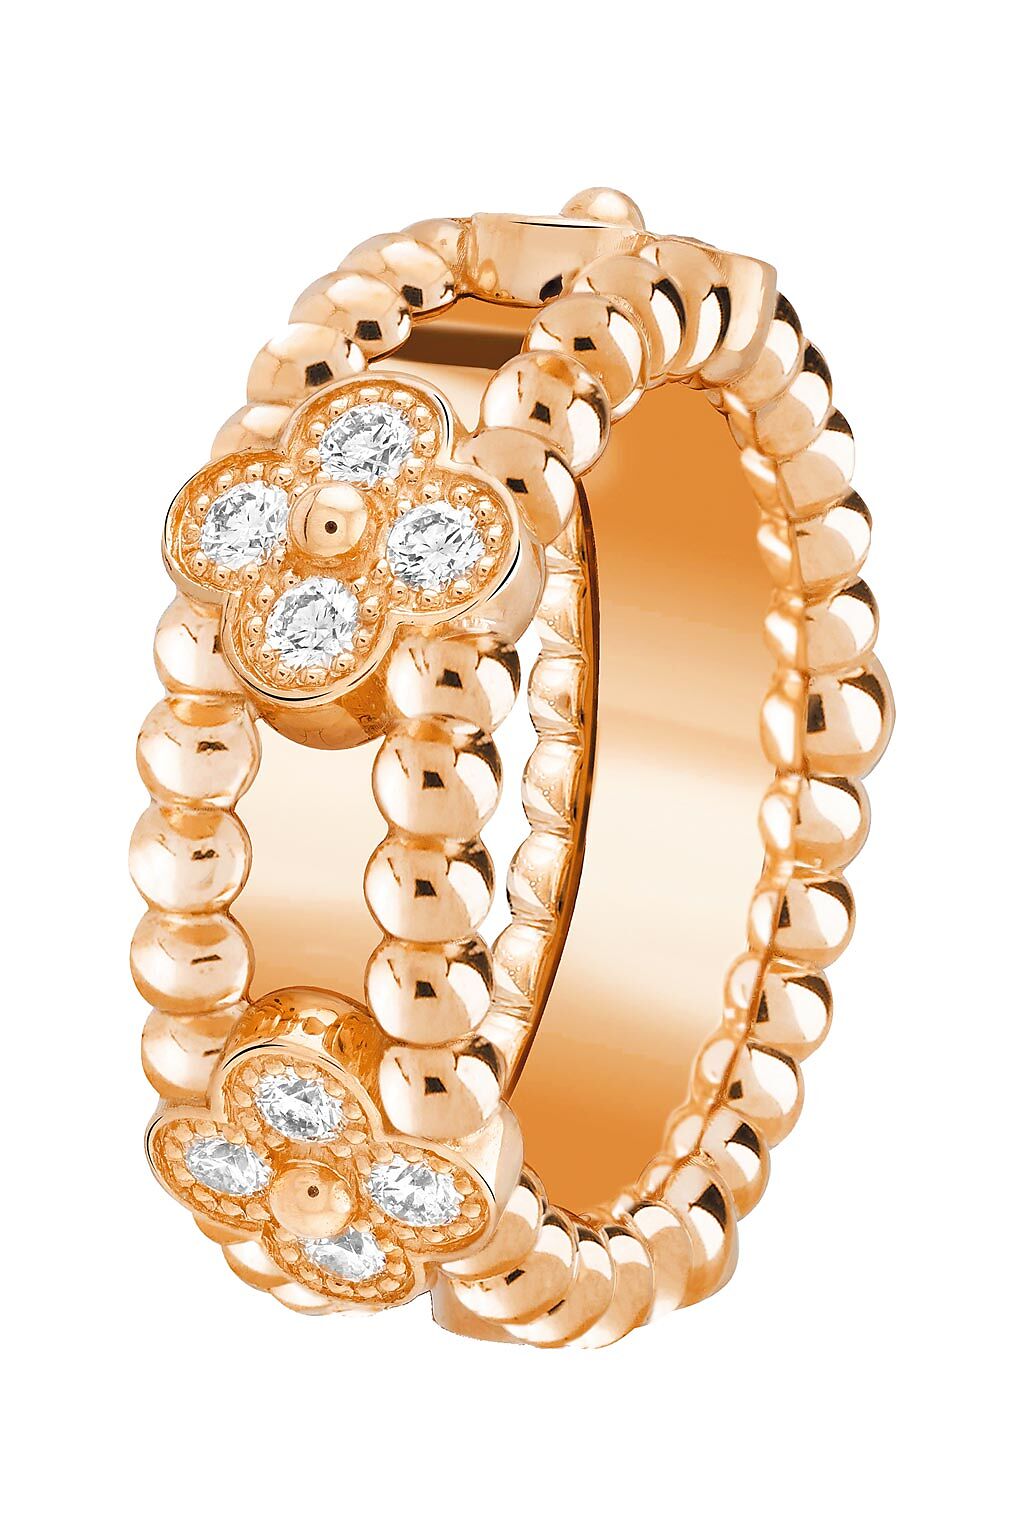 4.梵克雅寶Perlee sweet clovers戒指，玫瑰金、鑽石，20萬3000元。（Van Cleef & Arpels提供）